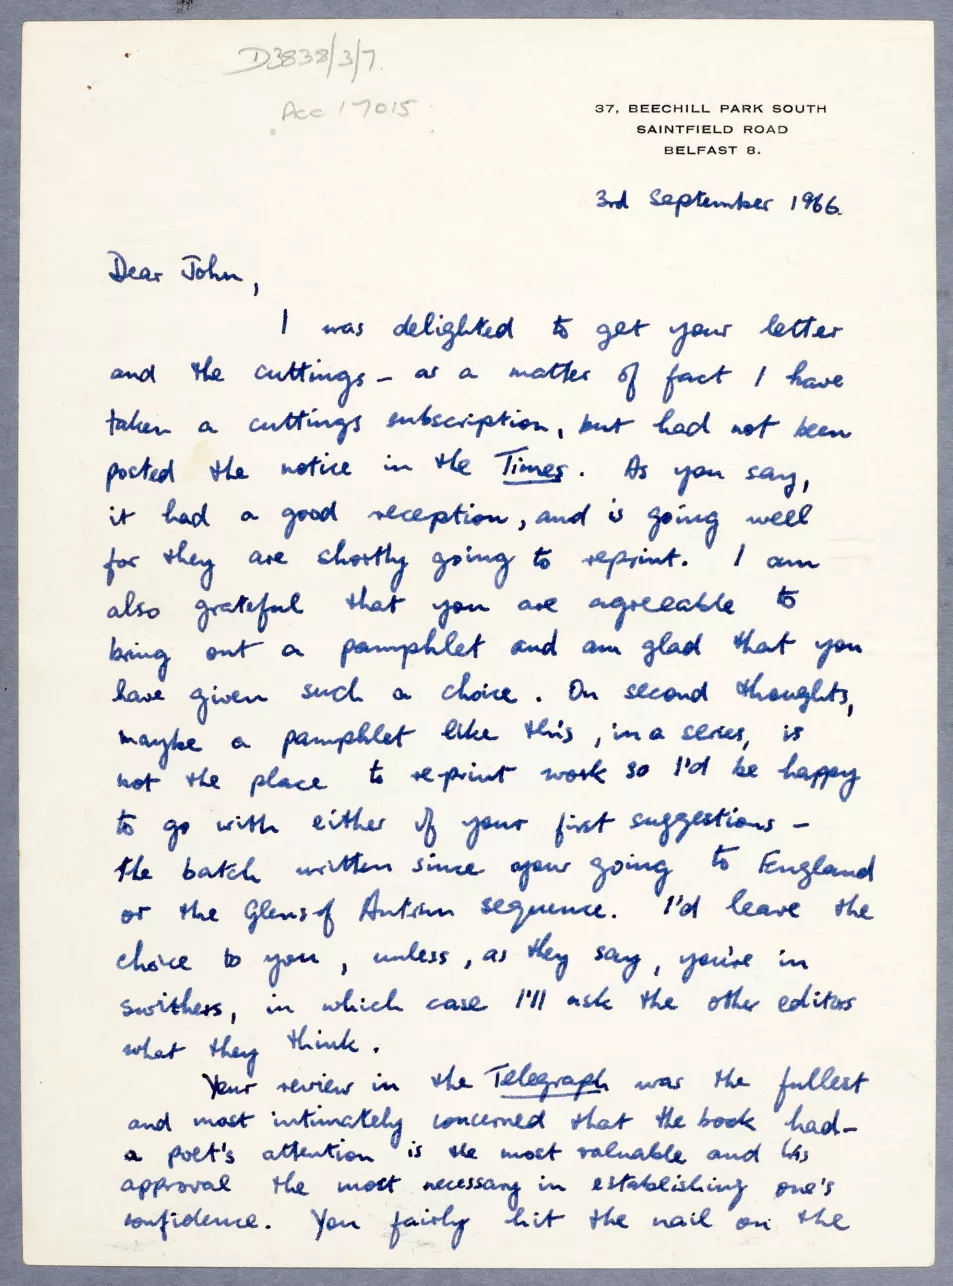 Seamus Heaney’s letter to John Hewitt in September 1966